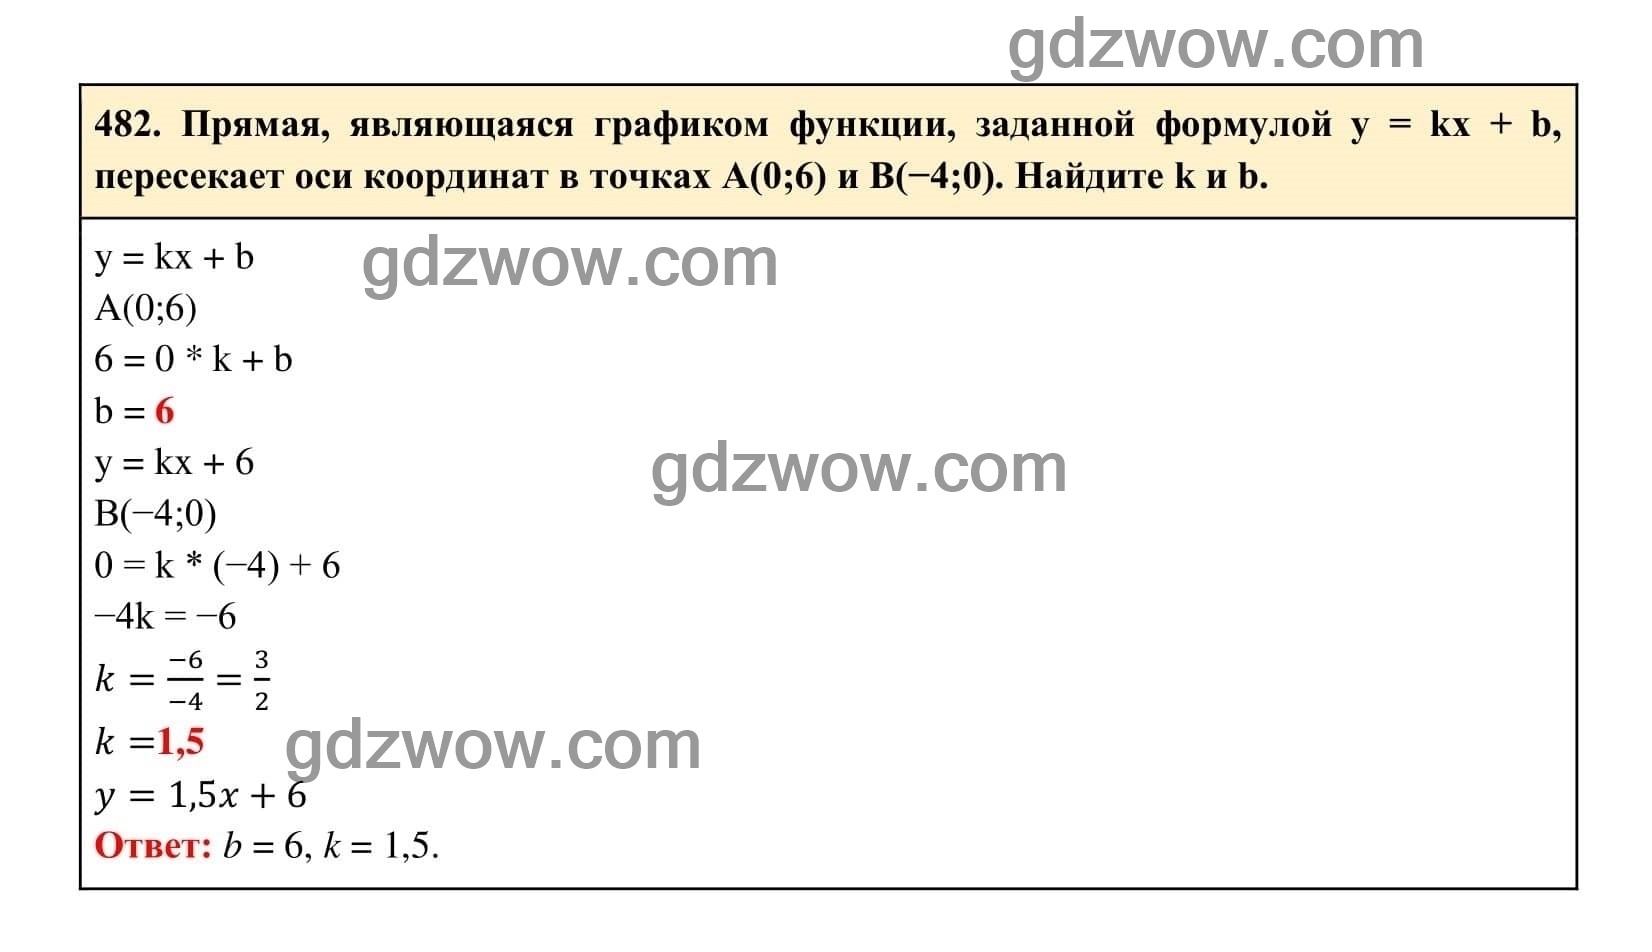 Упражнение 482 - ГДЗ по Алгебре 7 класс Учебник Макарычев (решебник) - GDZwow